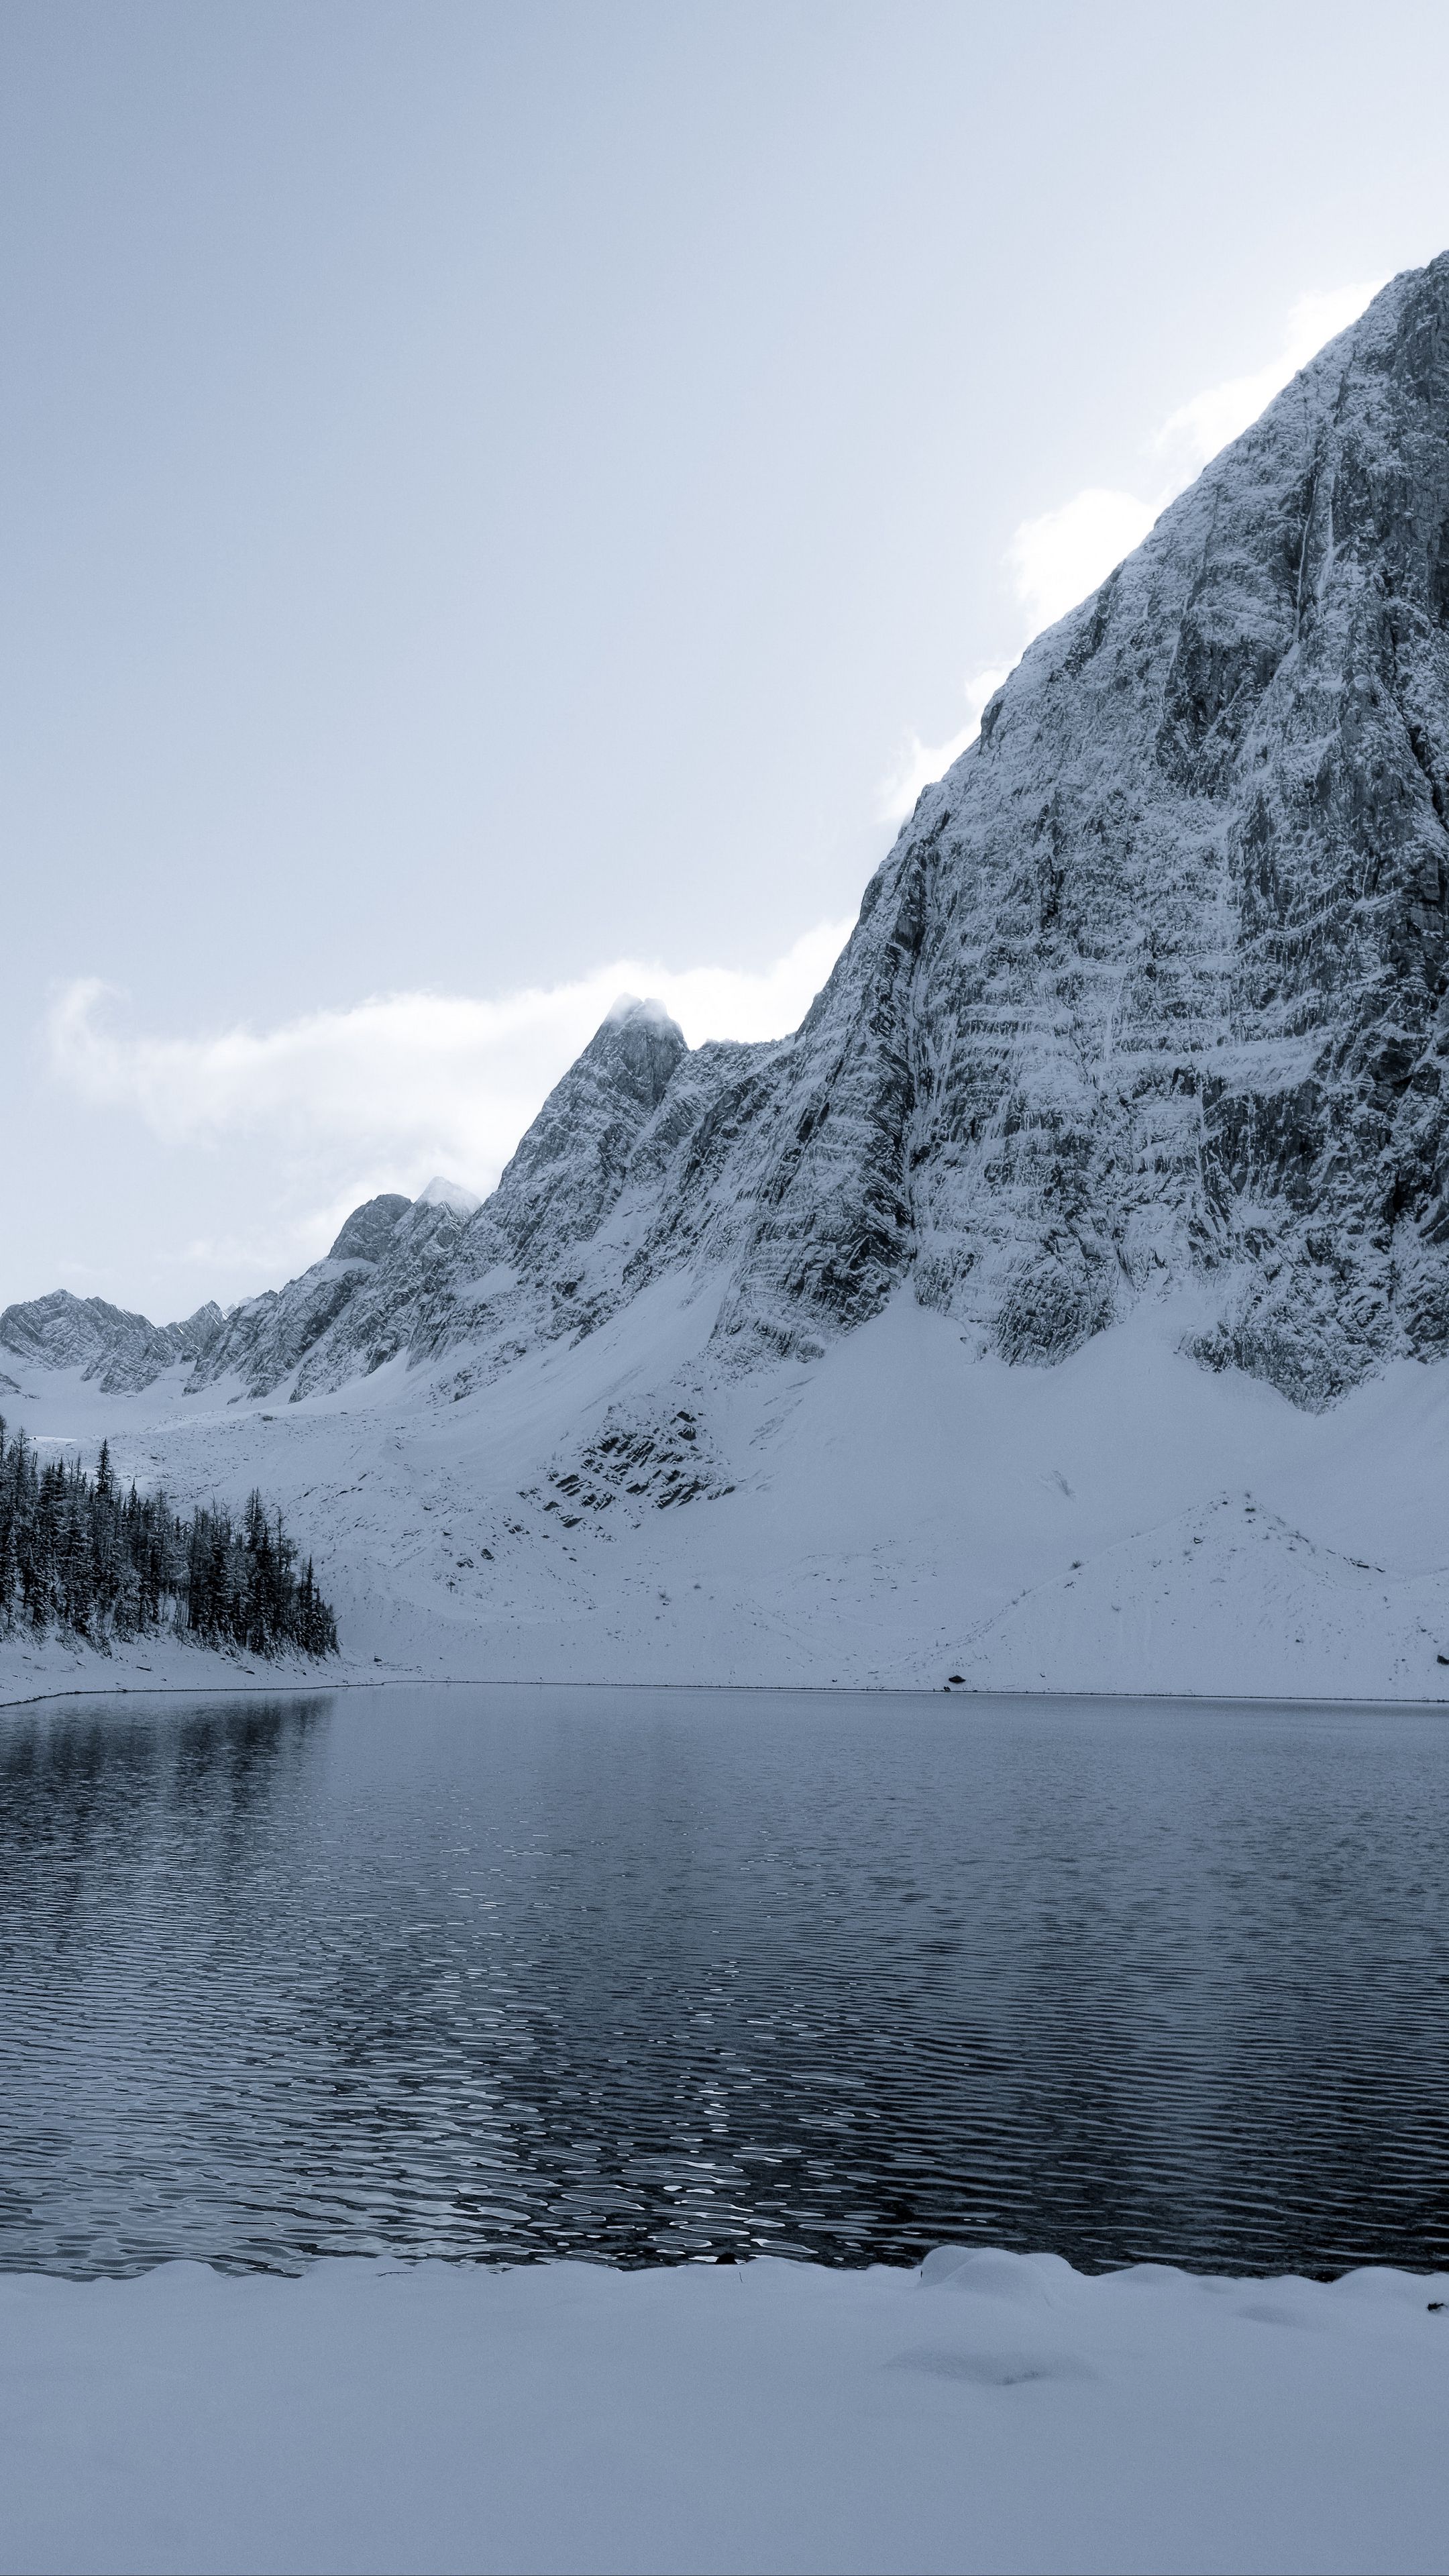 Download Wallpaper 2160x3840 Lake Mountain Snow Winter Landscape